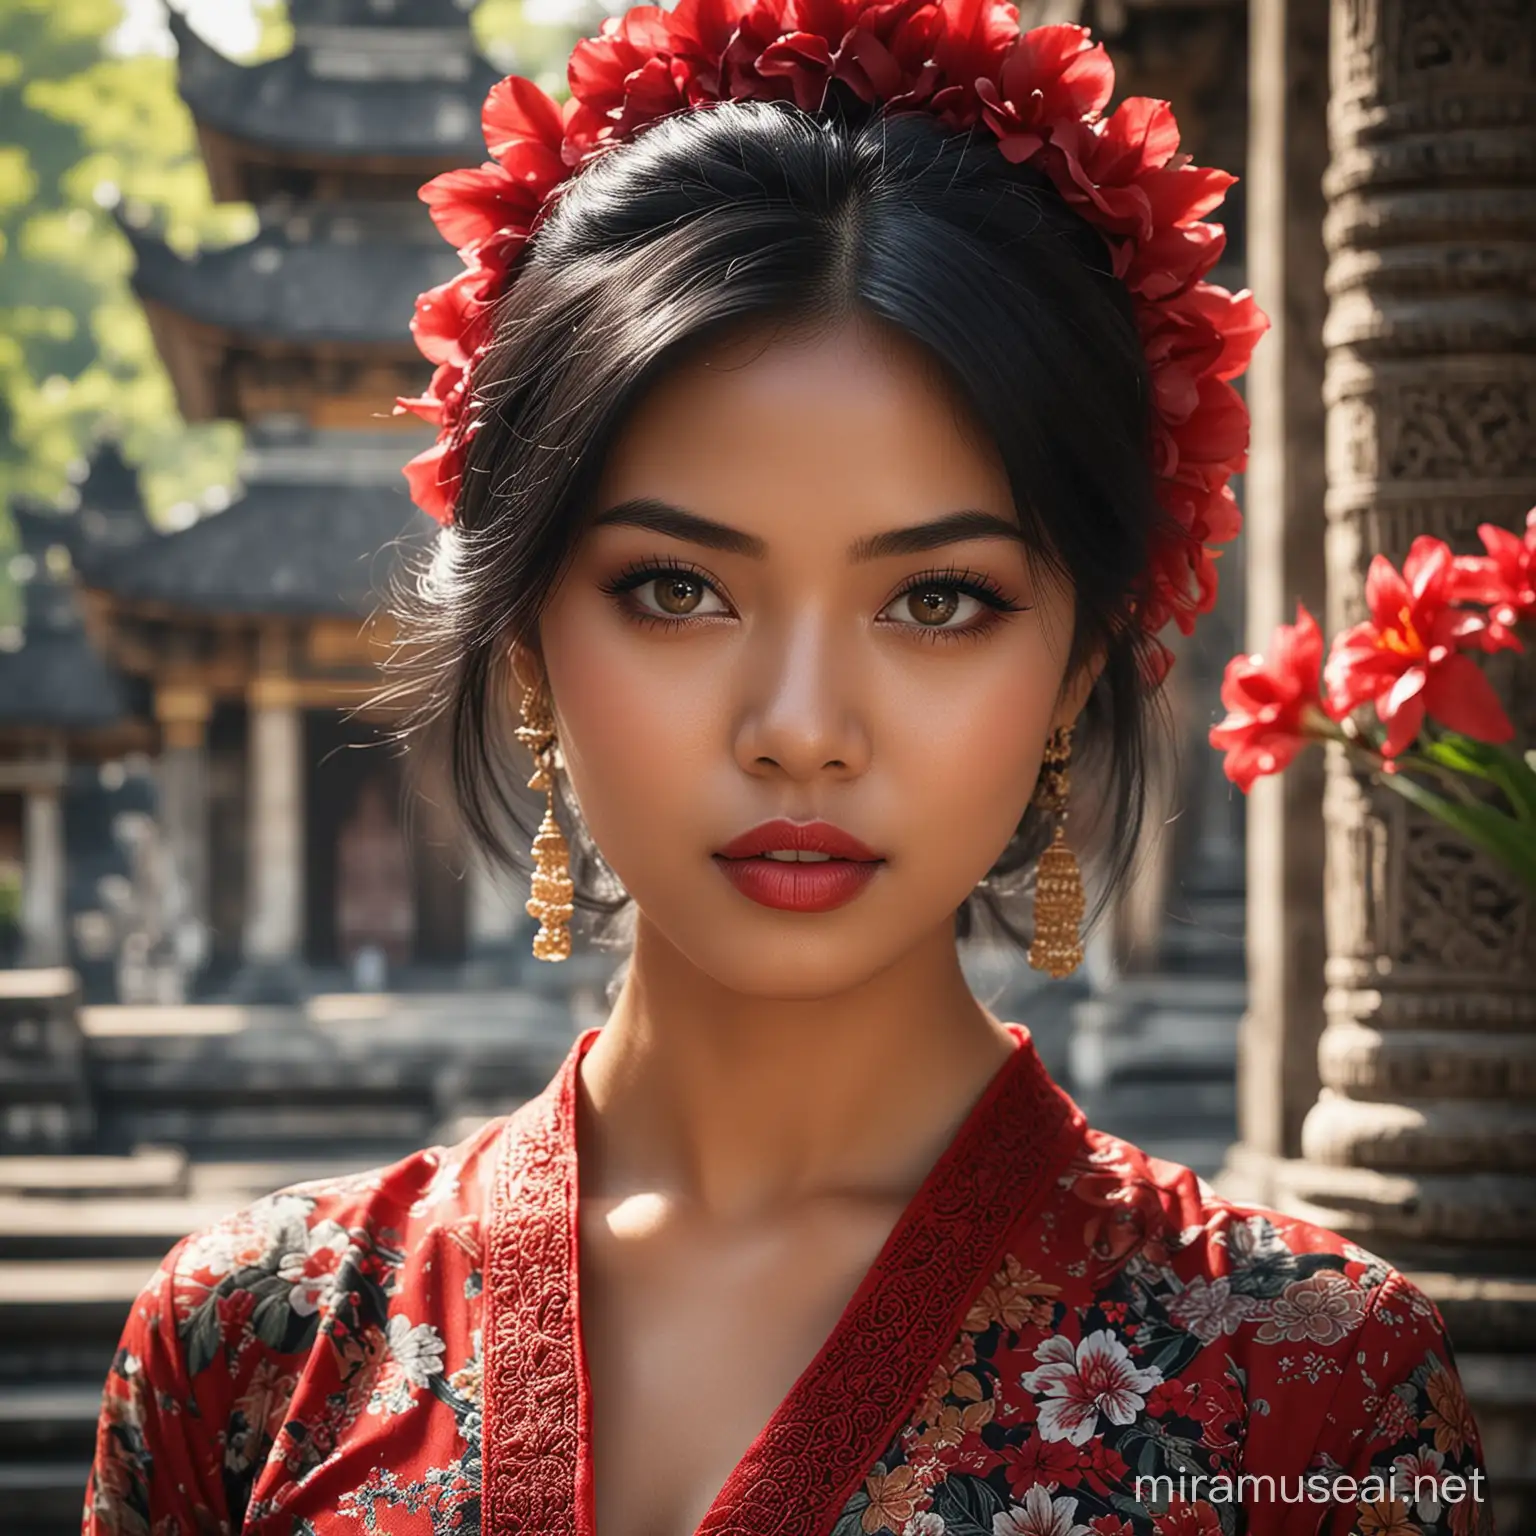 Beautiful Indonesian Girl Portrait in Balinese Kebaya at Bali Temple